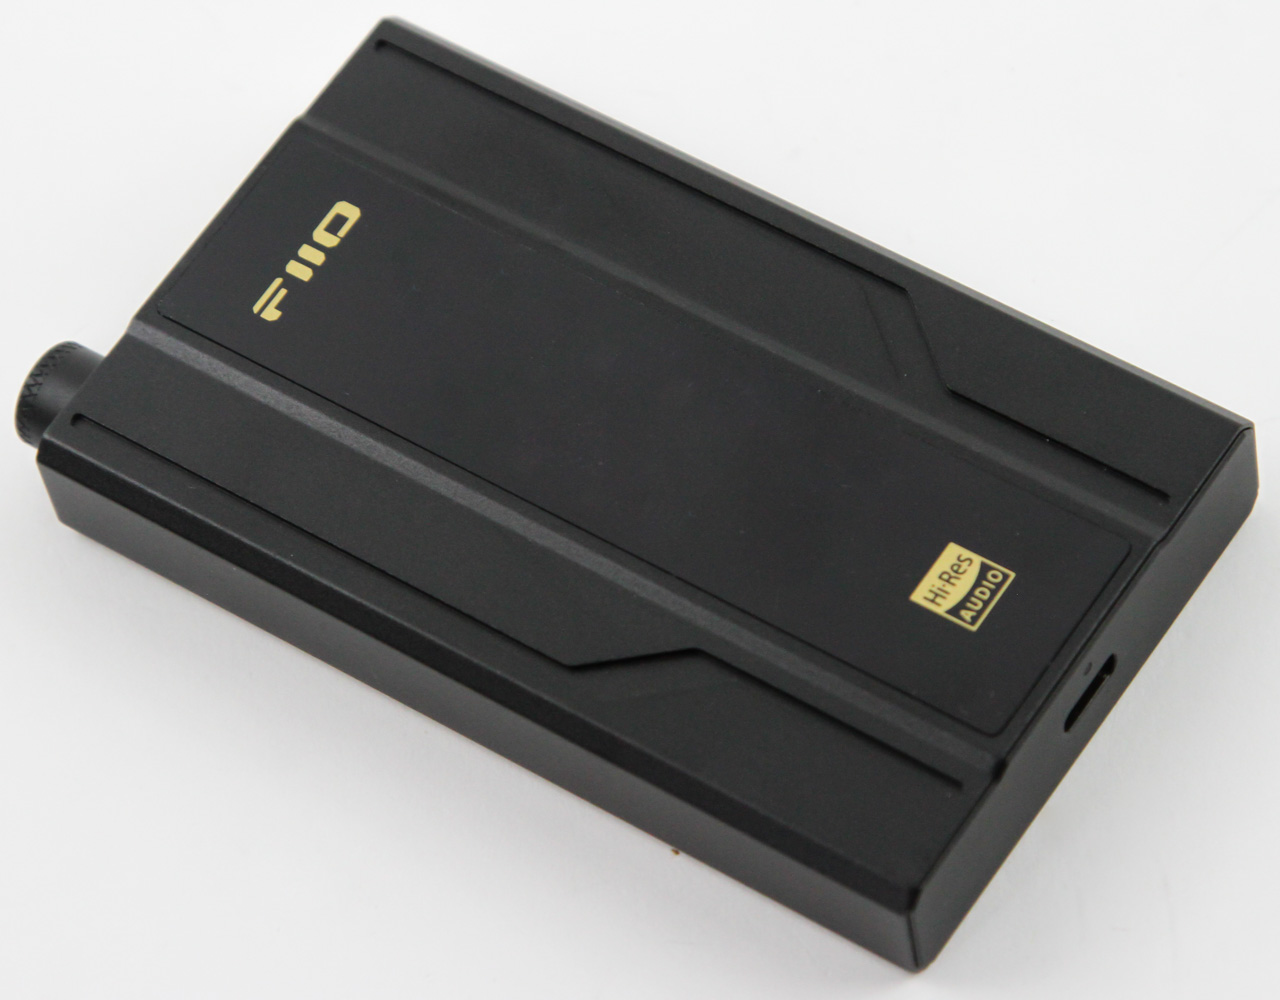 Quick Look: FiiO Q11 Portable DAC/Amplifier | TechPowerUp